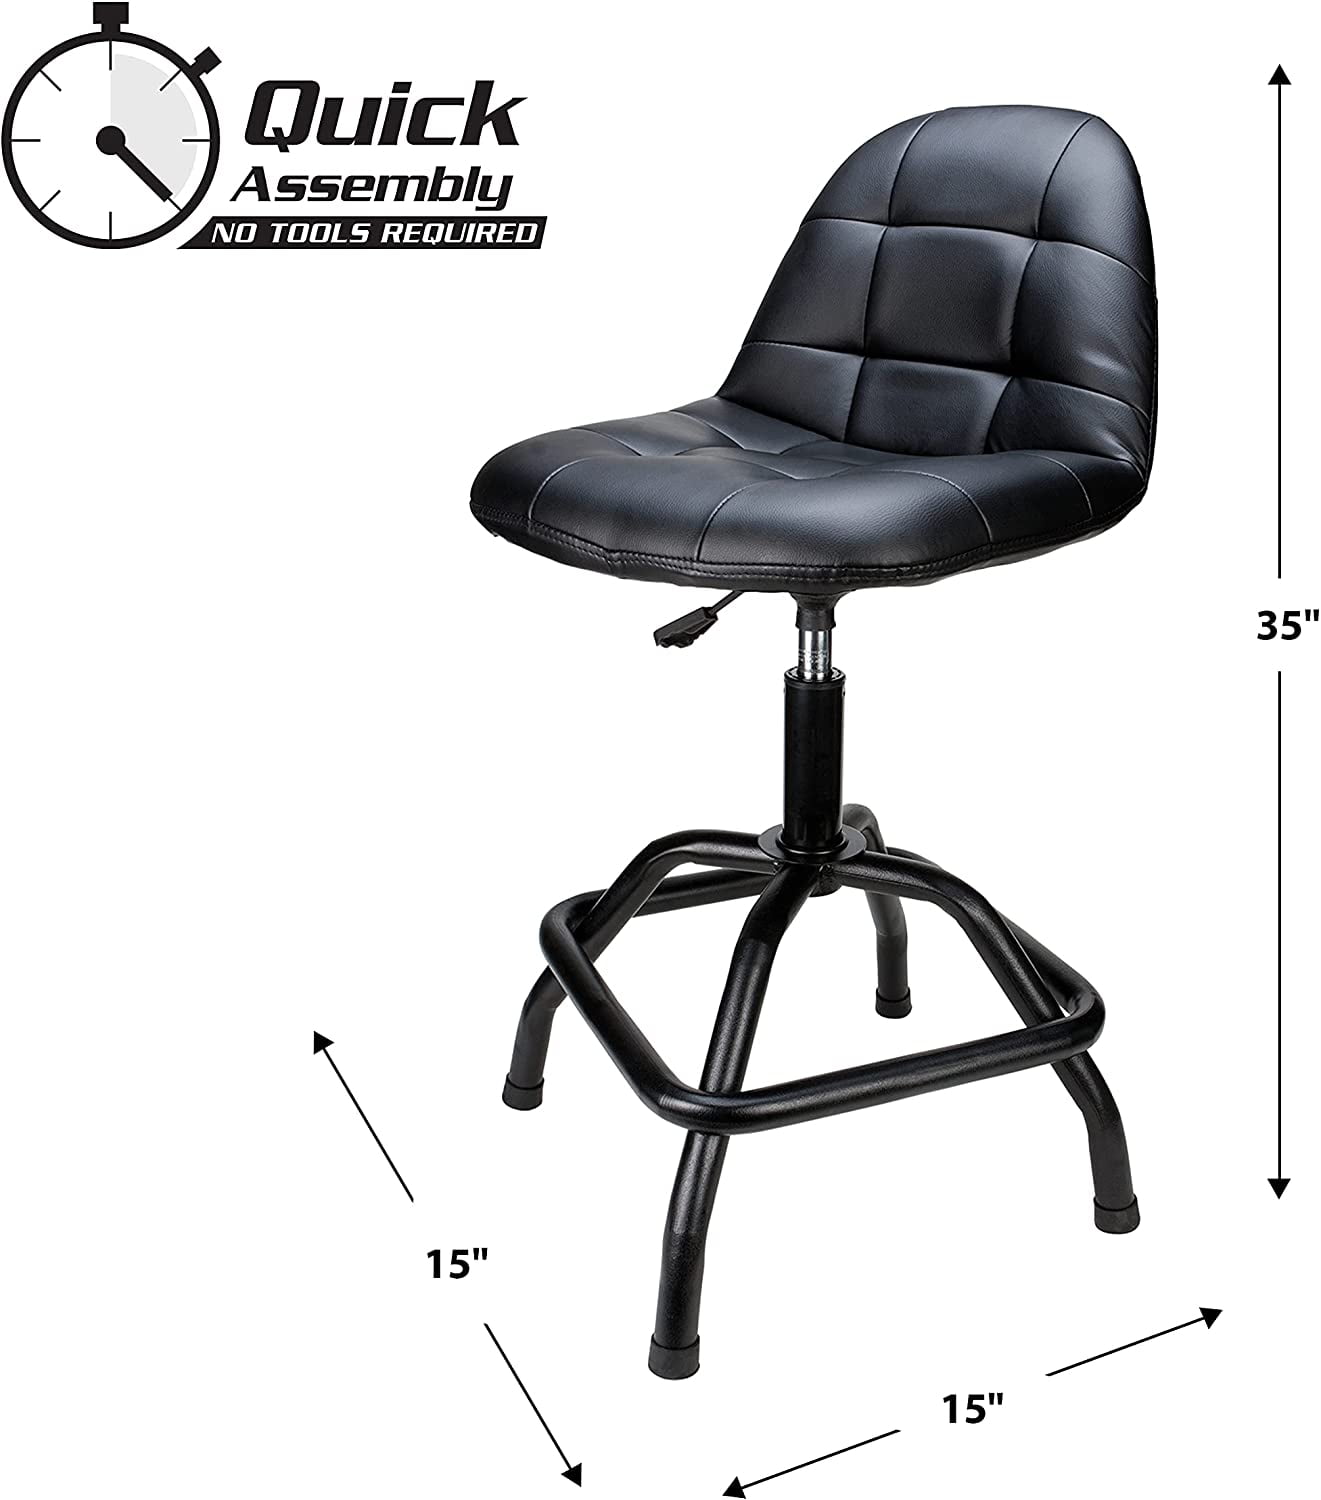 Rockler Pneumatic Shop Stool with Adjustable Backrest